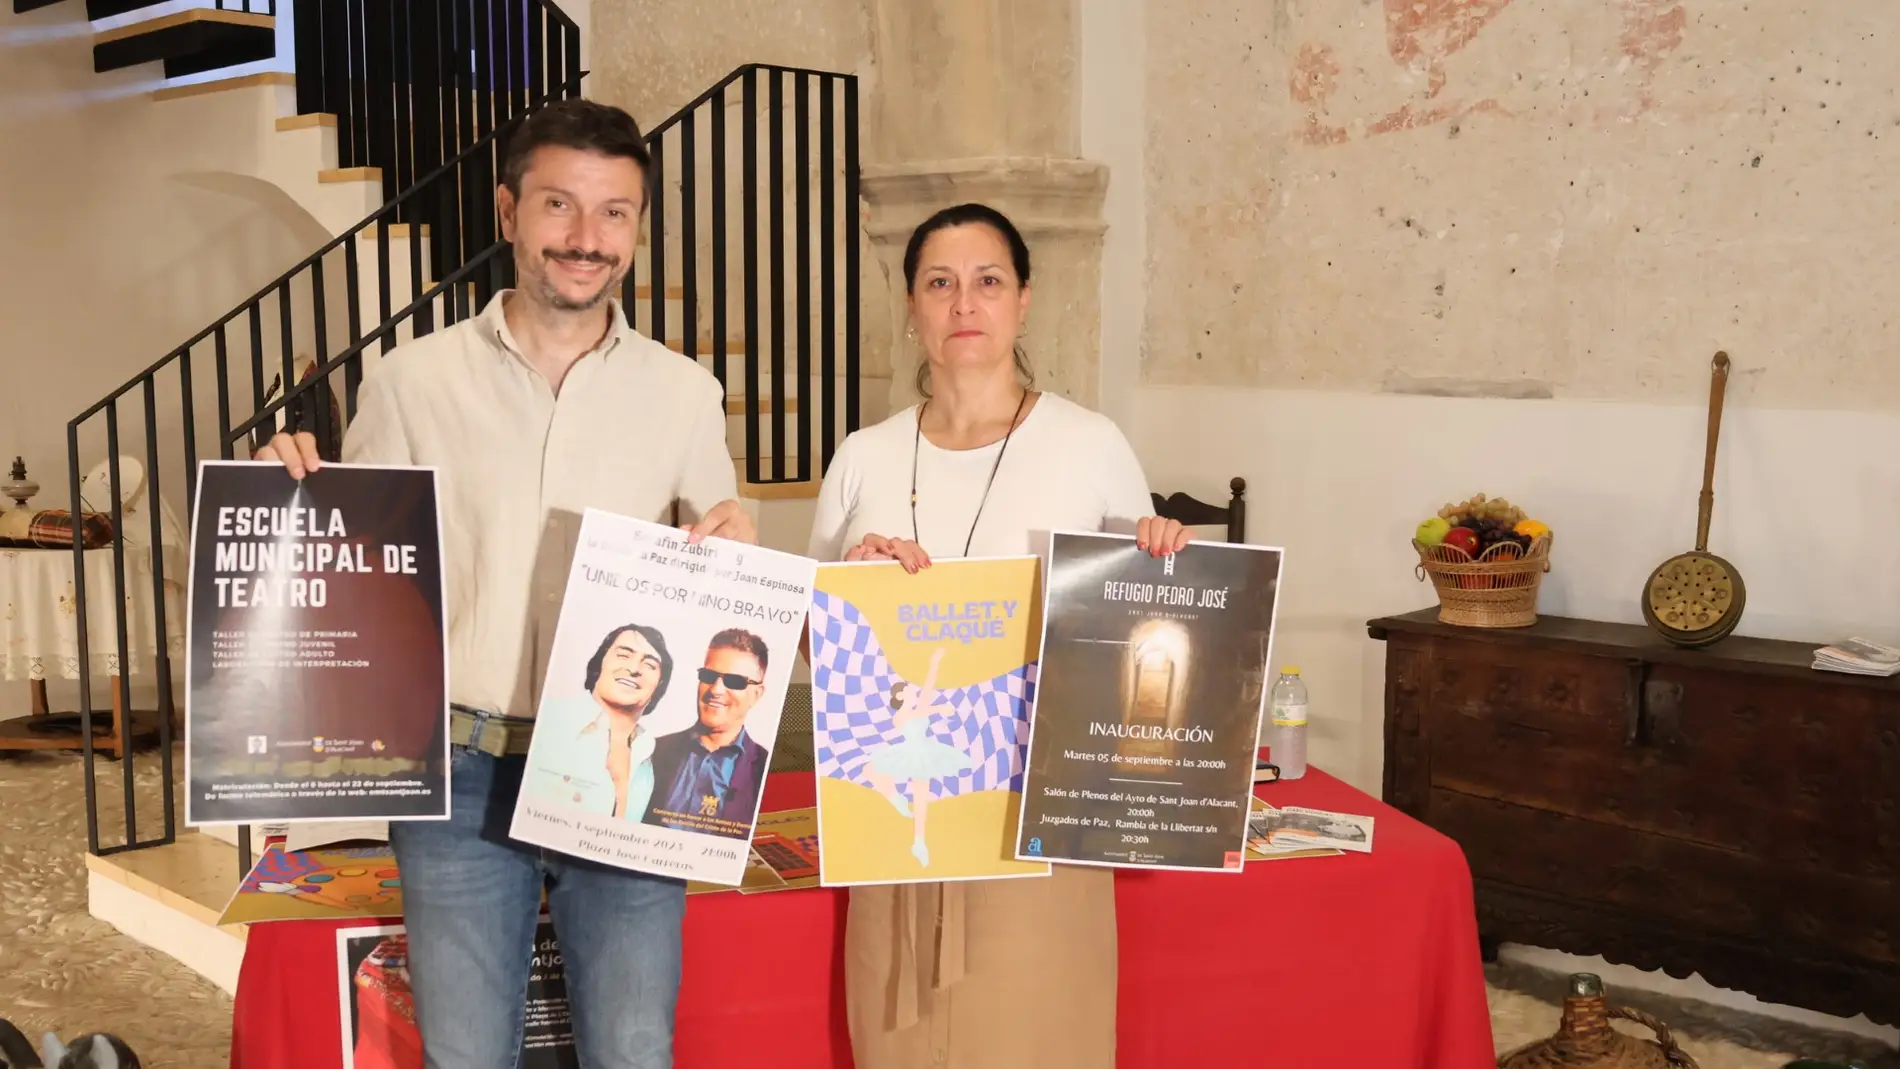 Presentación de la programación cultural de Sant Joan d'Alacant